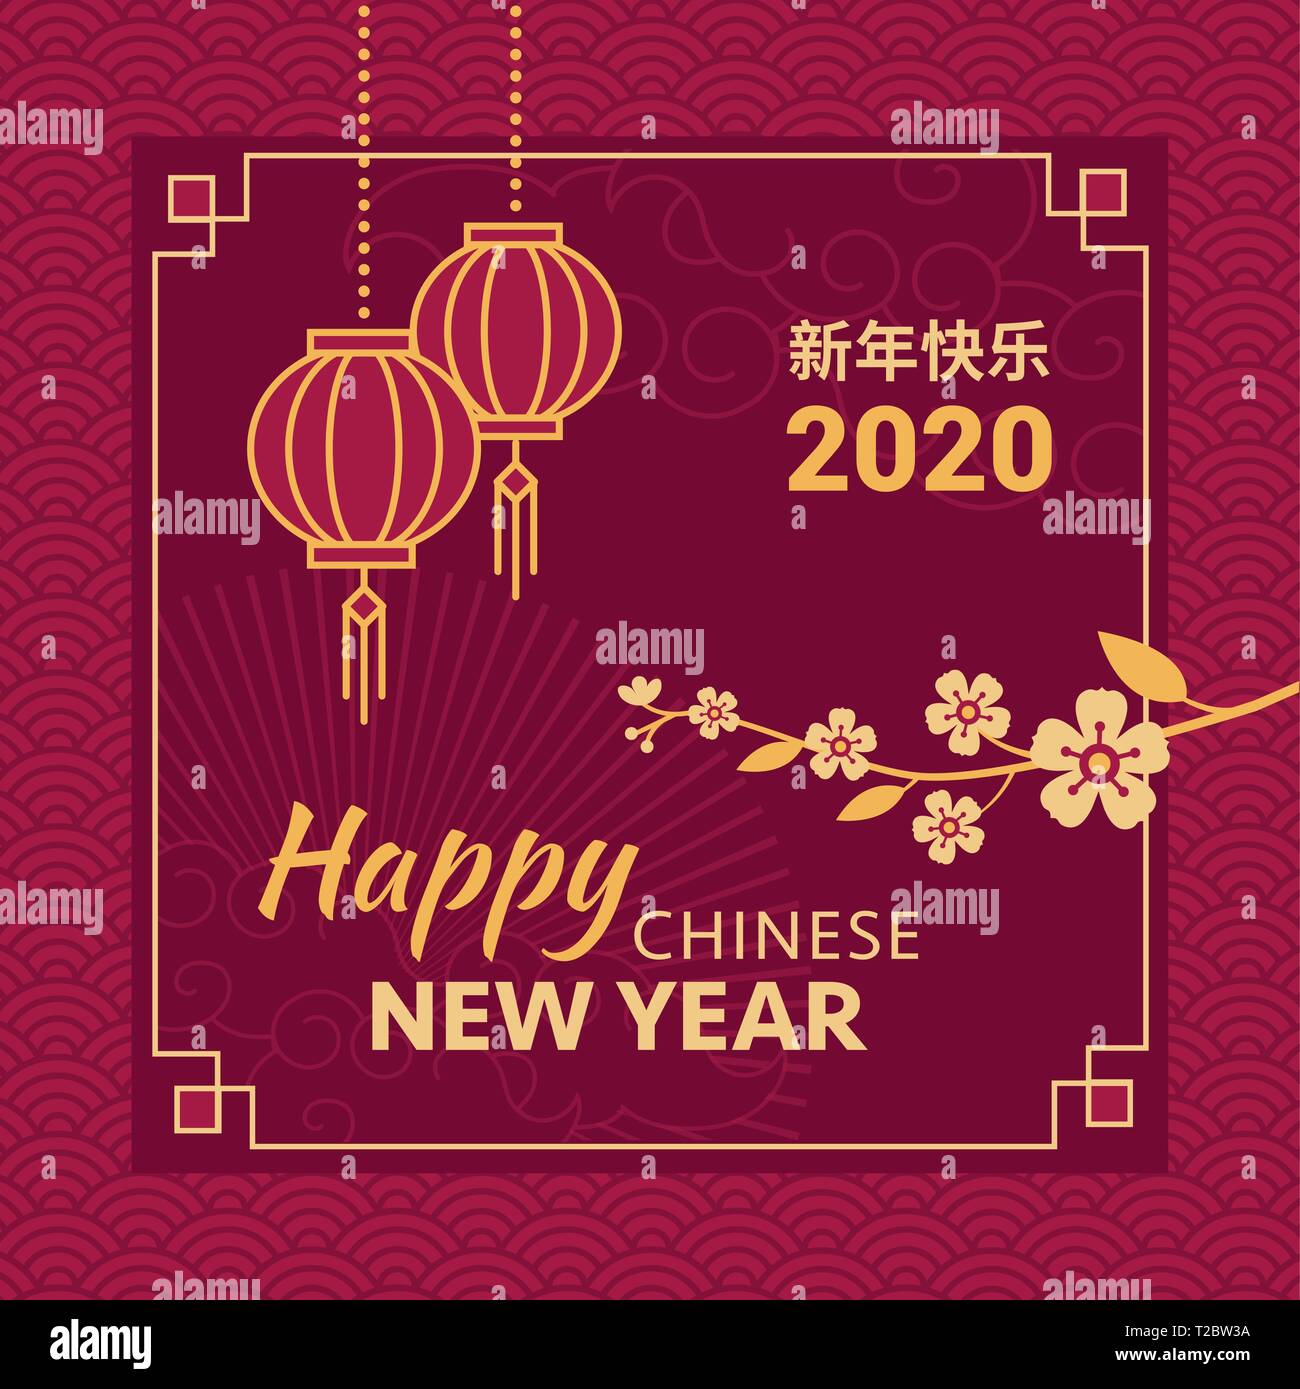 Happy Chinese New Year Karte und social media Post mit goldenen Blume Blumen und roten Laternen Stock Vektor